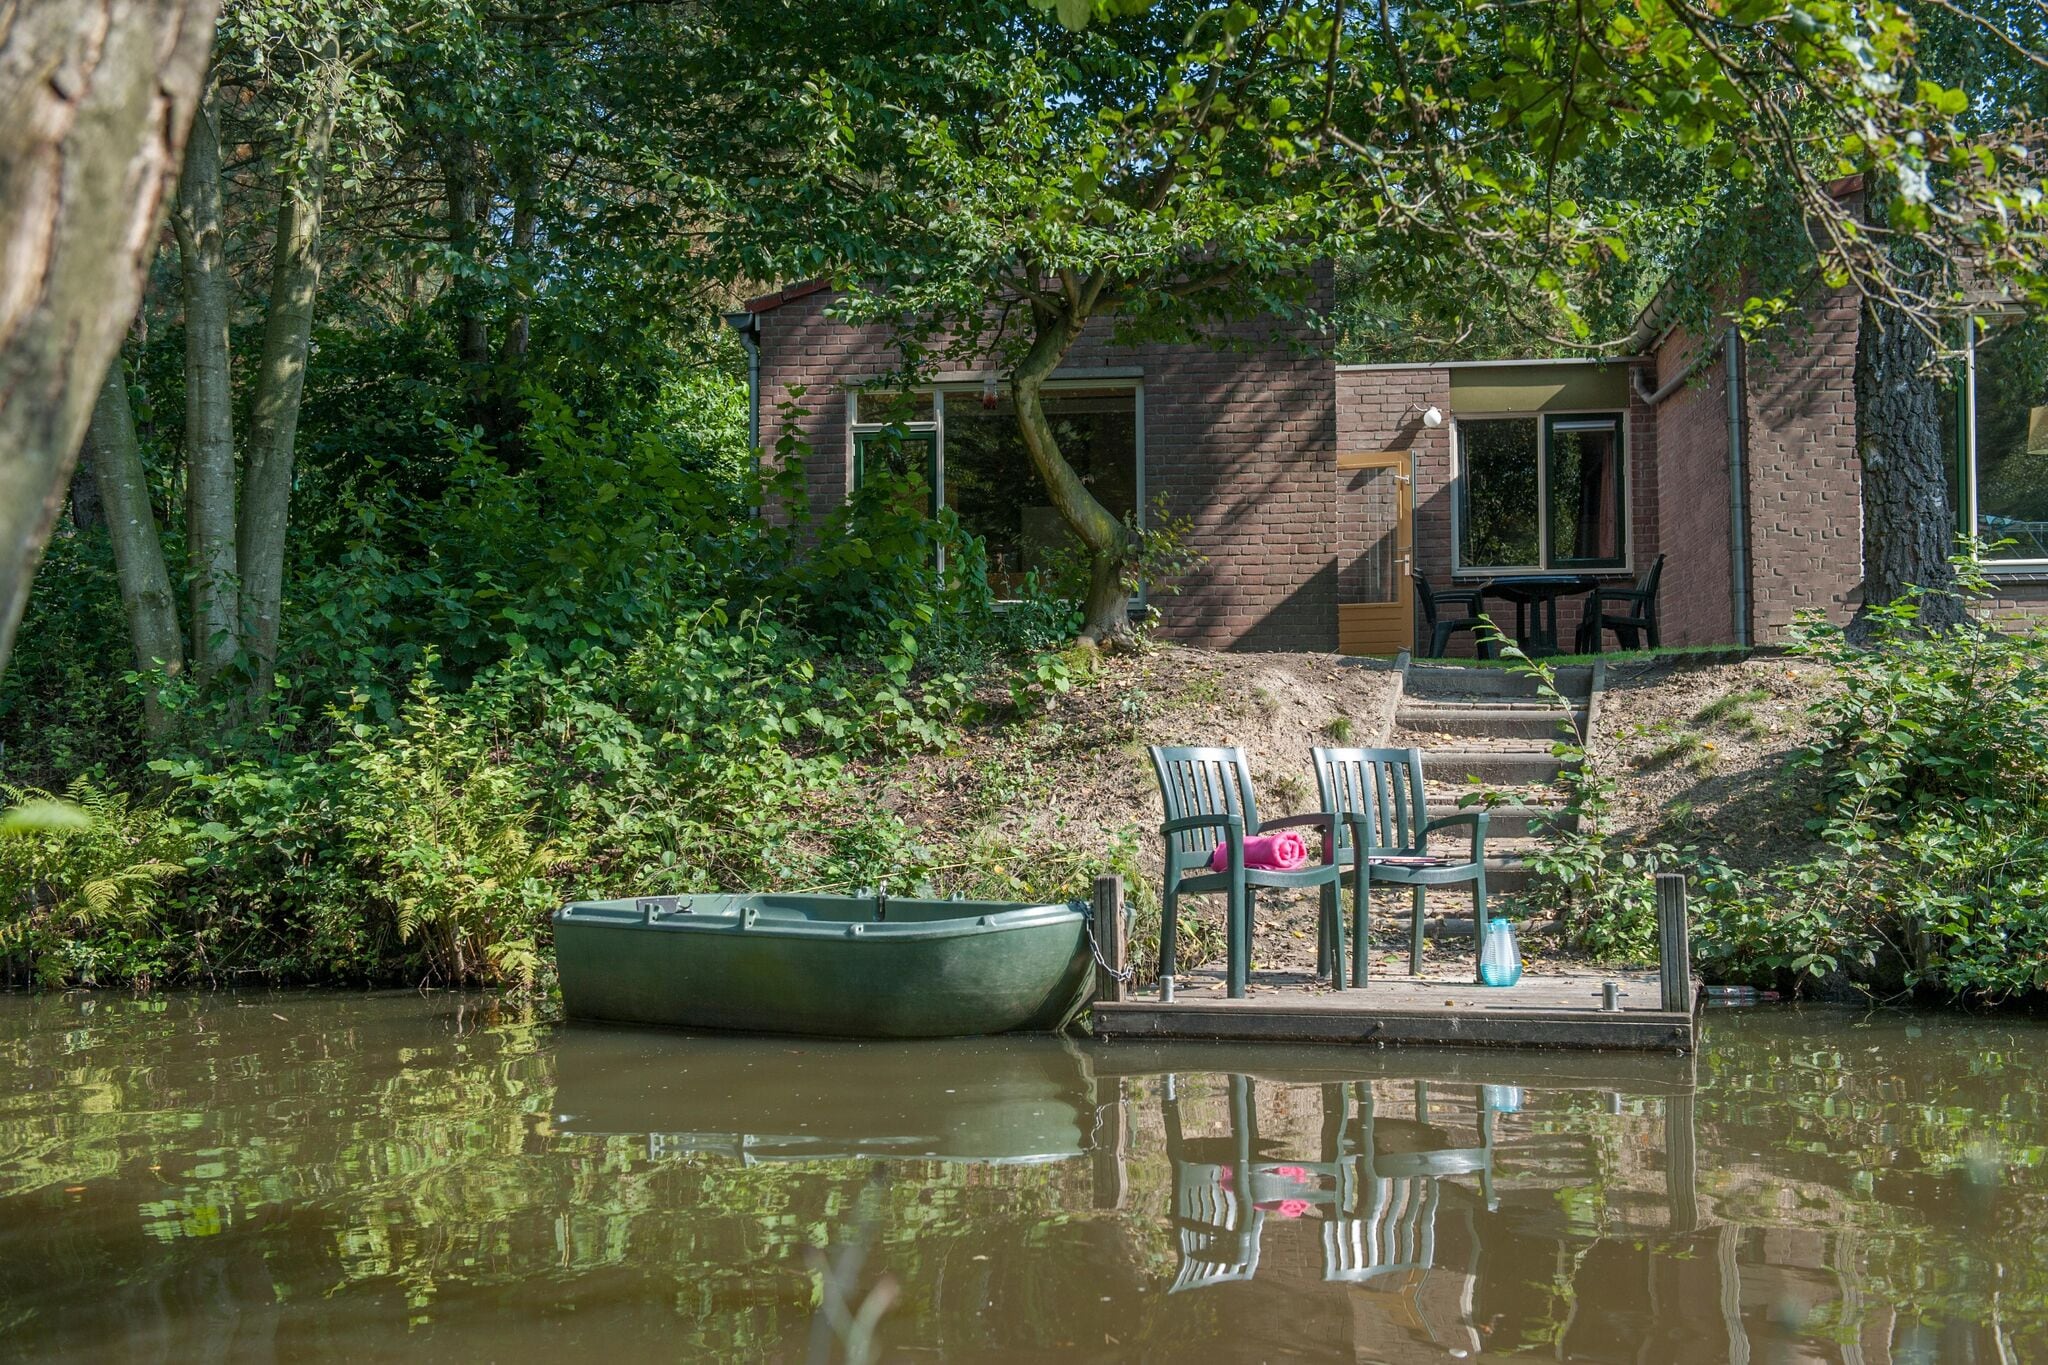 Gerestylede, aan het water gelegen bungalow met roeiboot, op een vakantiepark